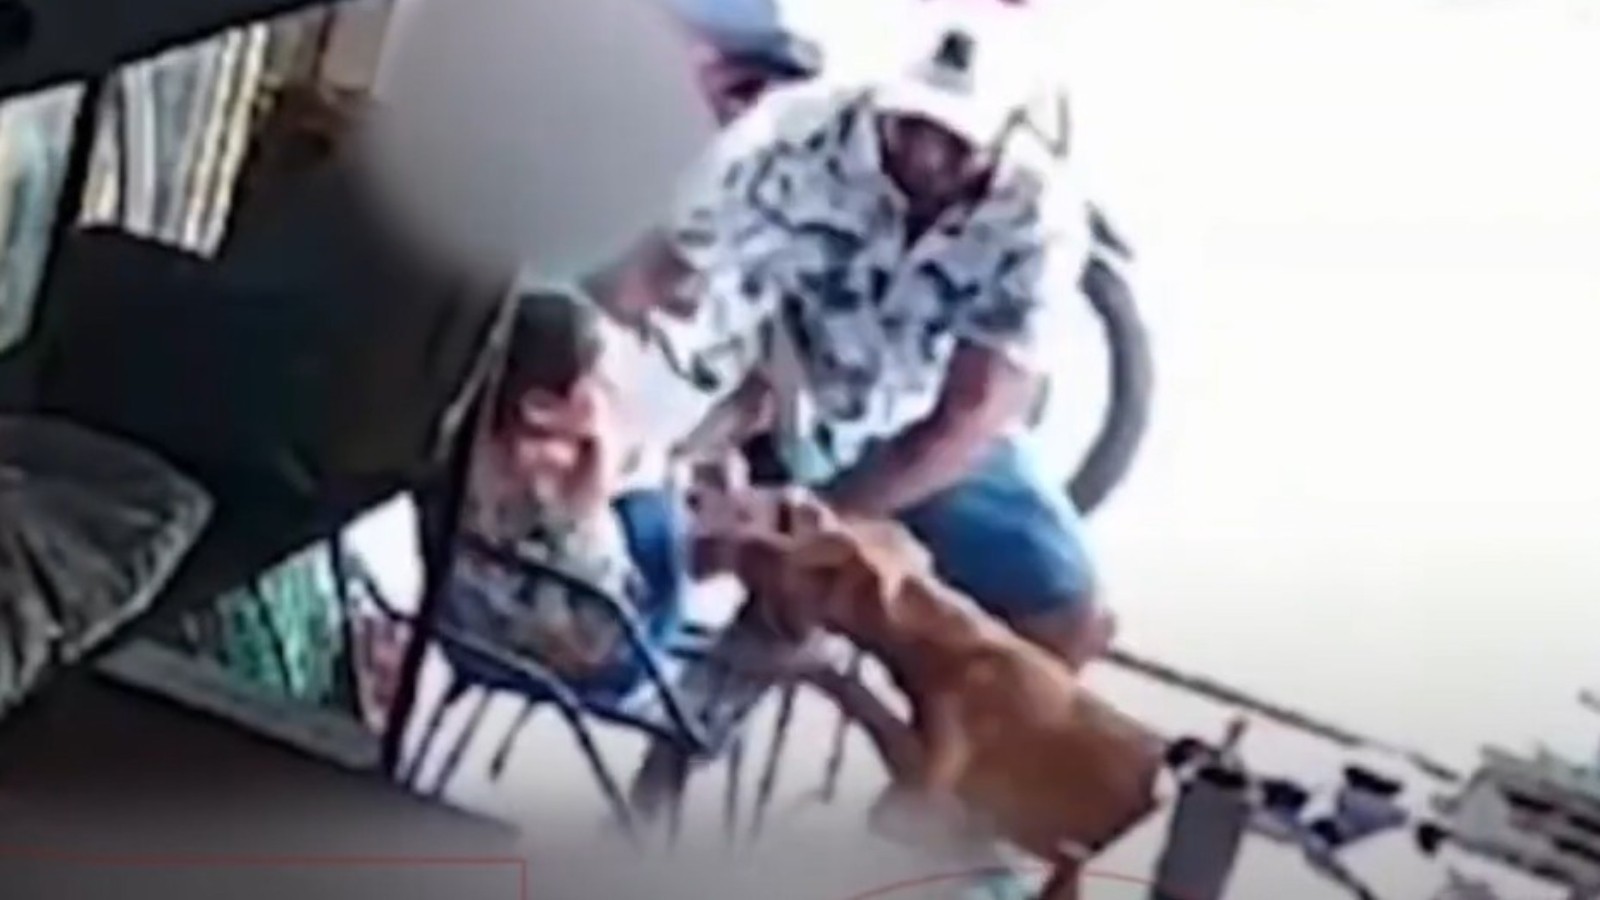 Criança de 5 anos é atacada por cão na calçada no Ceará; vídeo